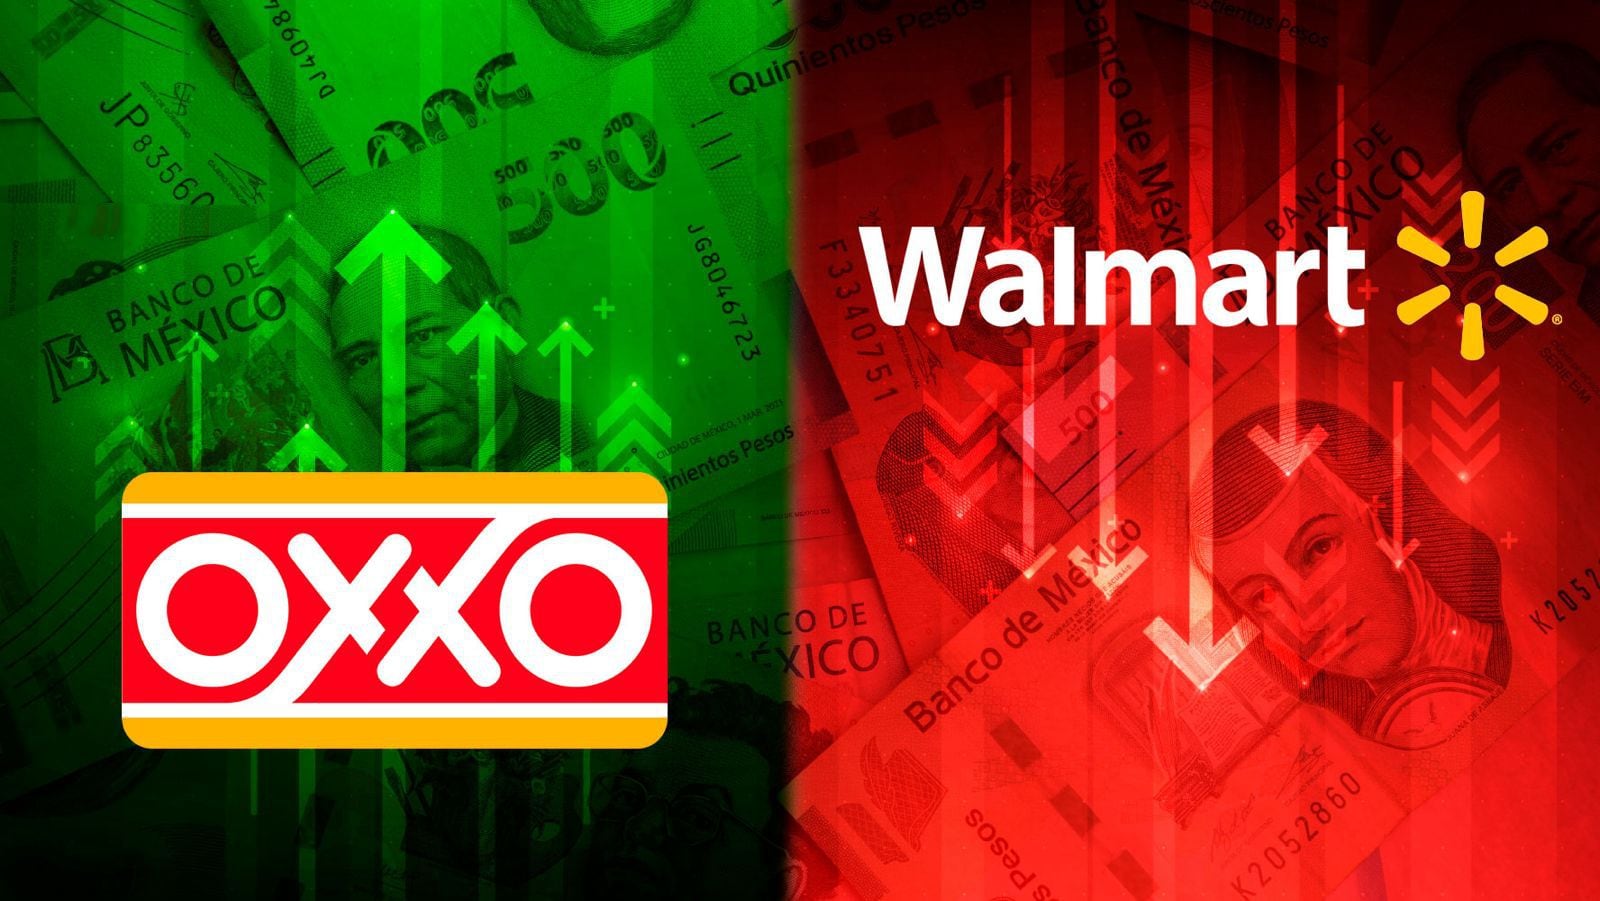 El ‘OXXO’ ya deja más que ‘Walmart’